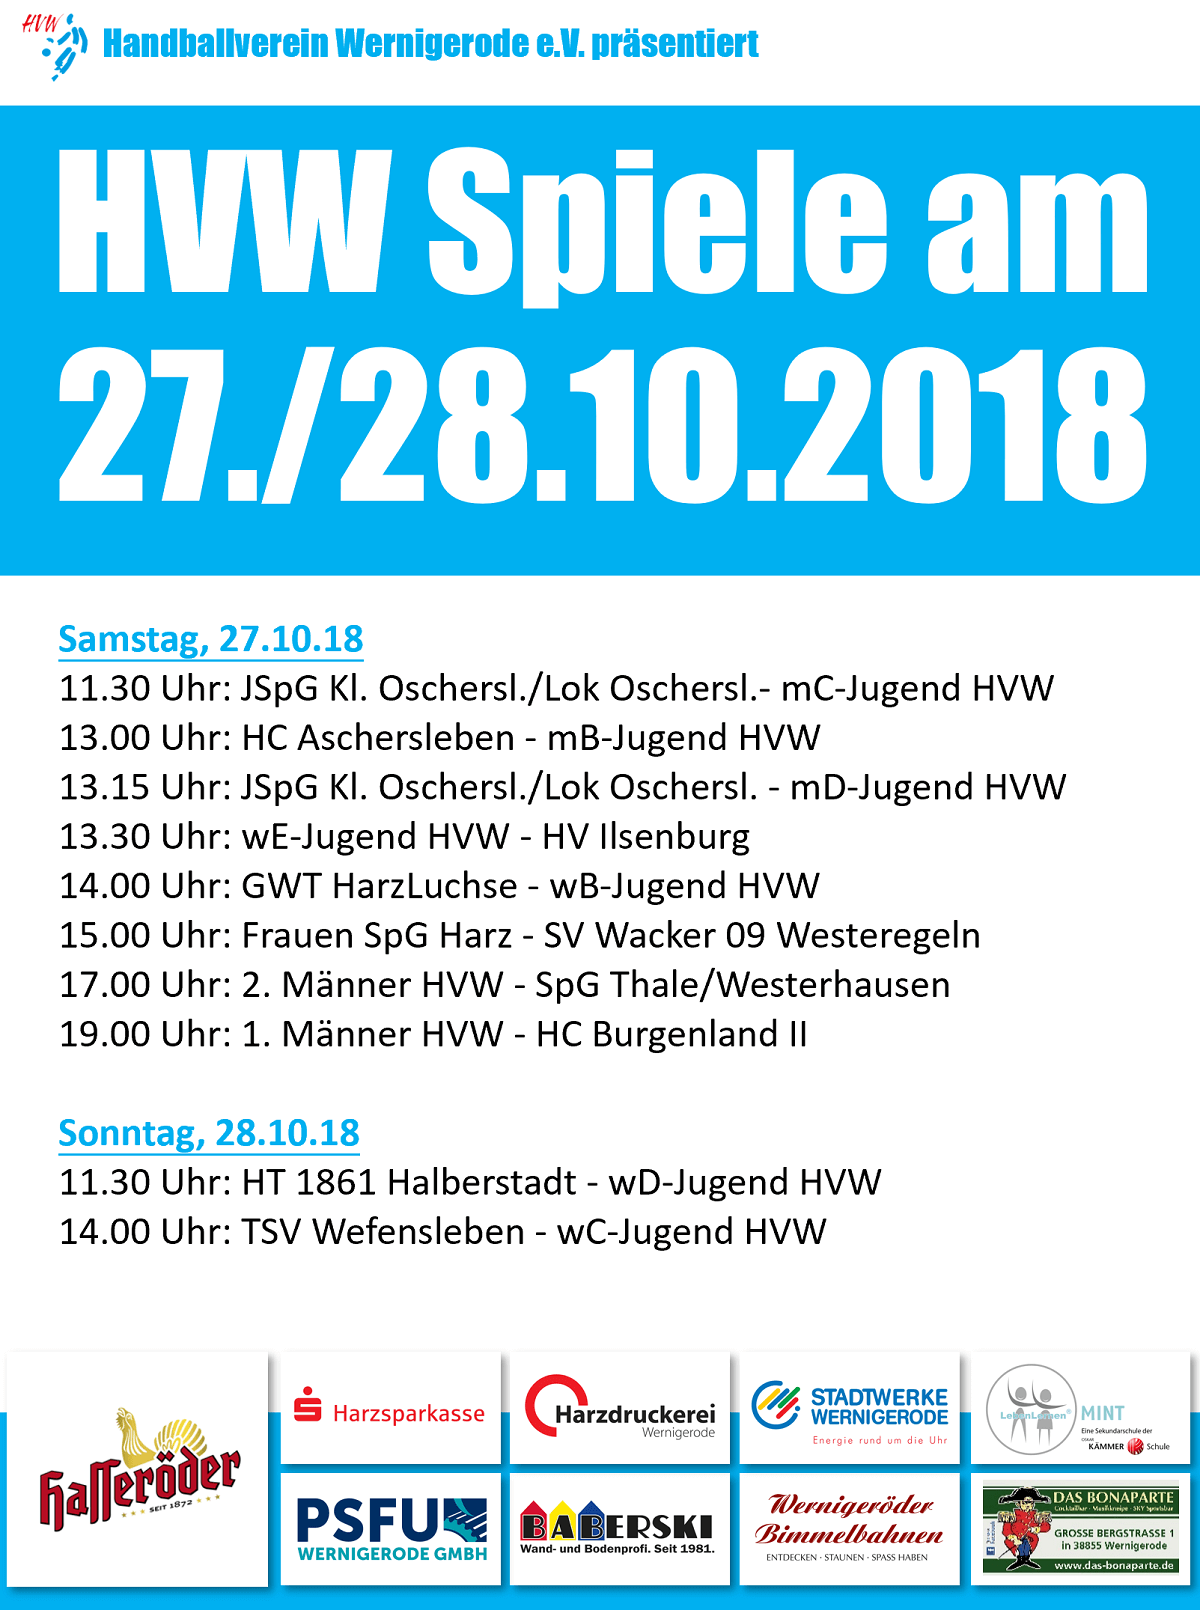 HVW Spiele am 27./28.10.2018